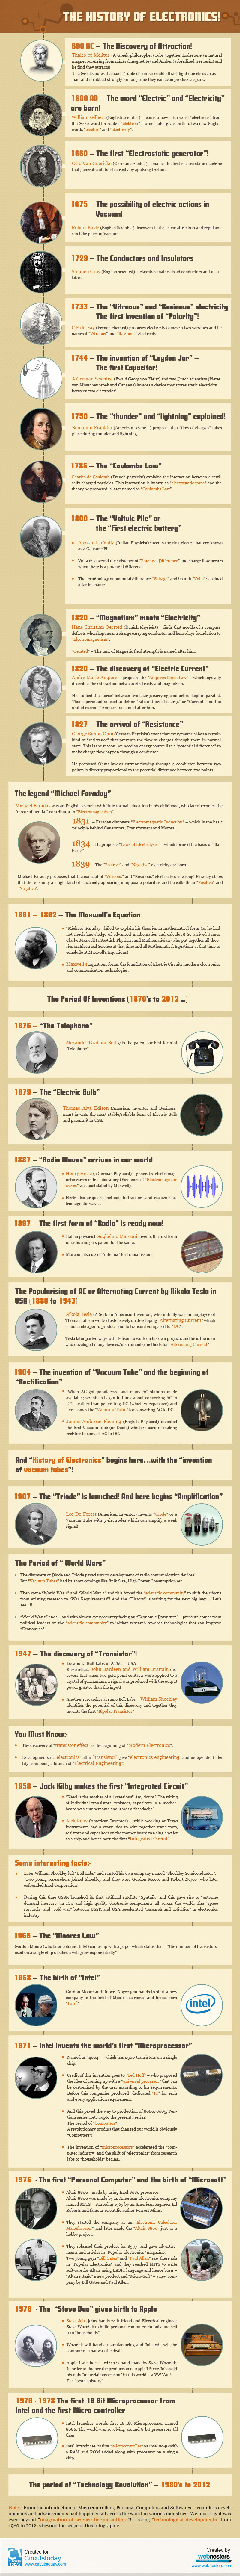 Historia de la electrónica